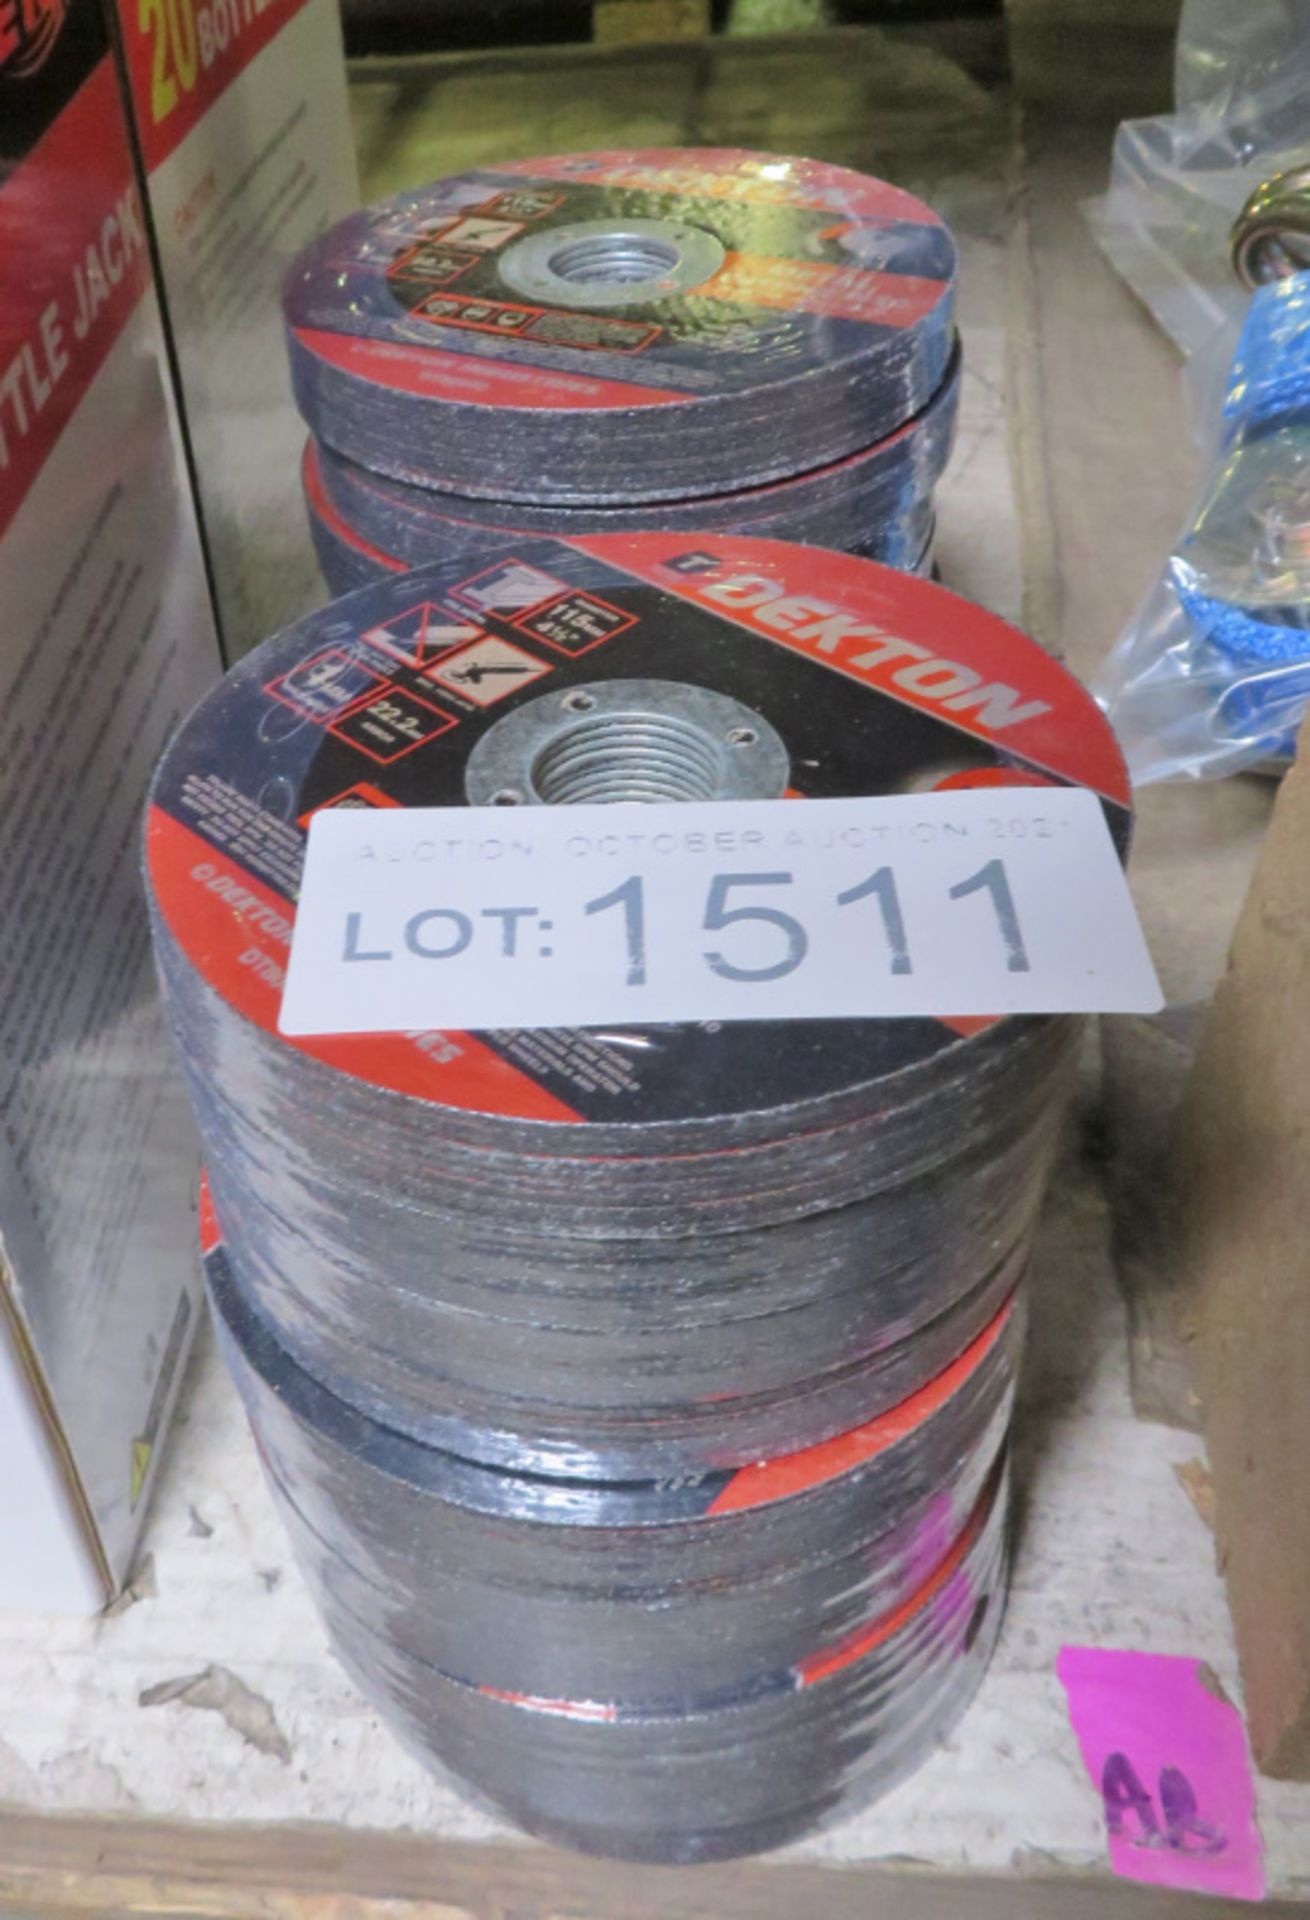 Dekton Metal cutting discs - 115mm diameter - 10 packs - 10 discs per pack